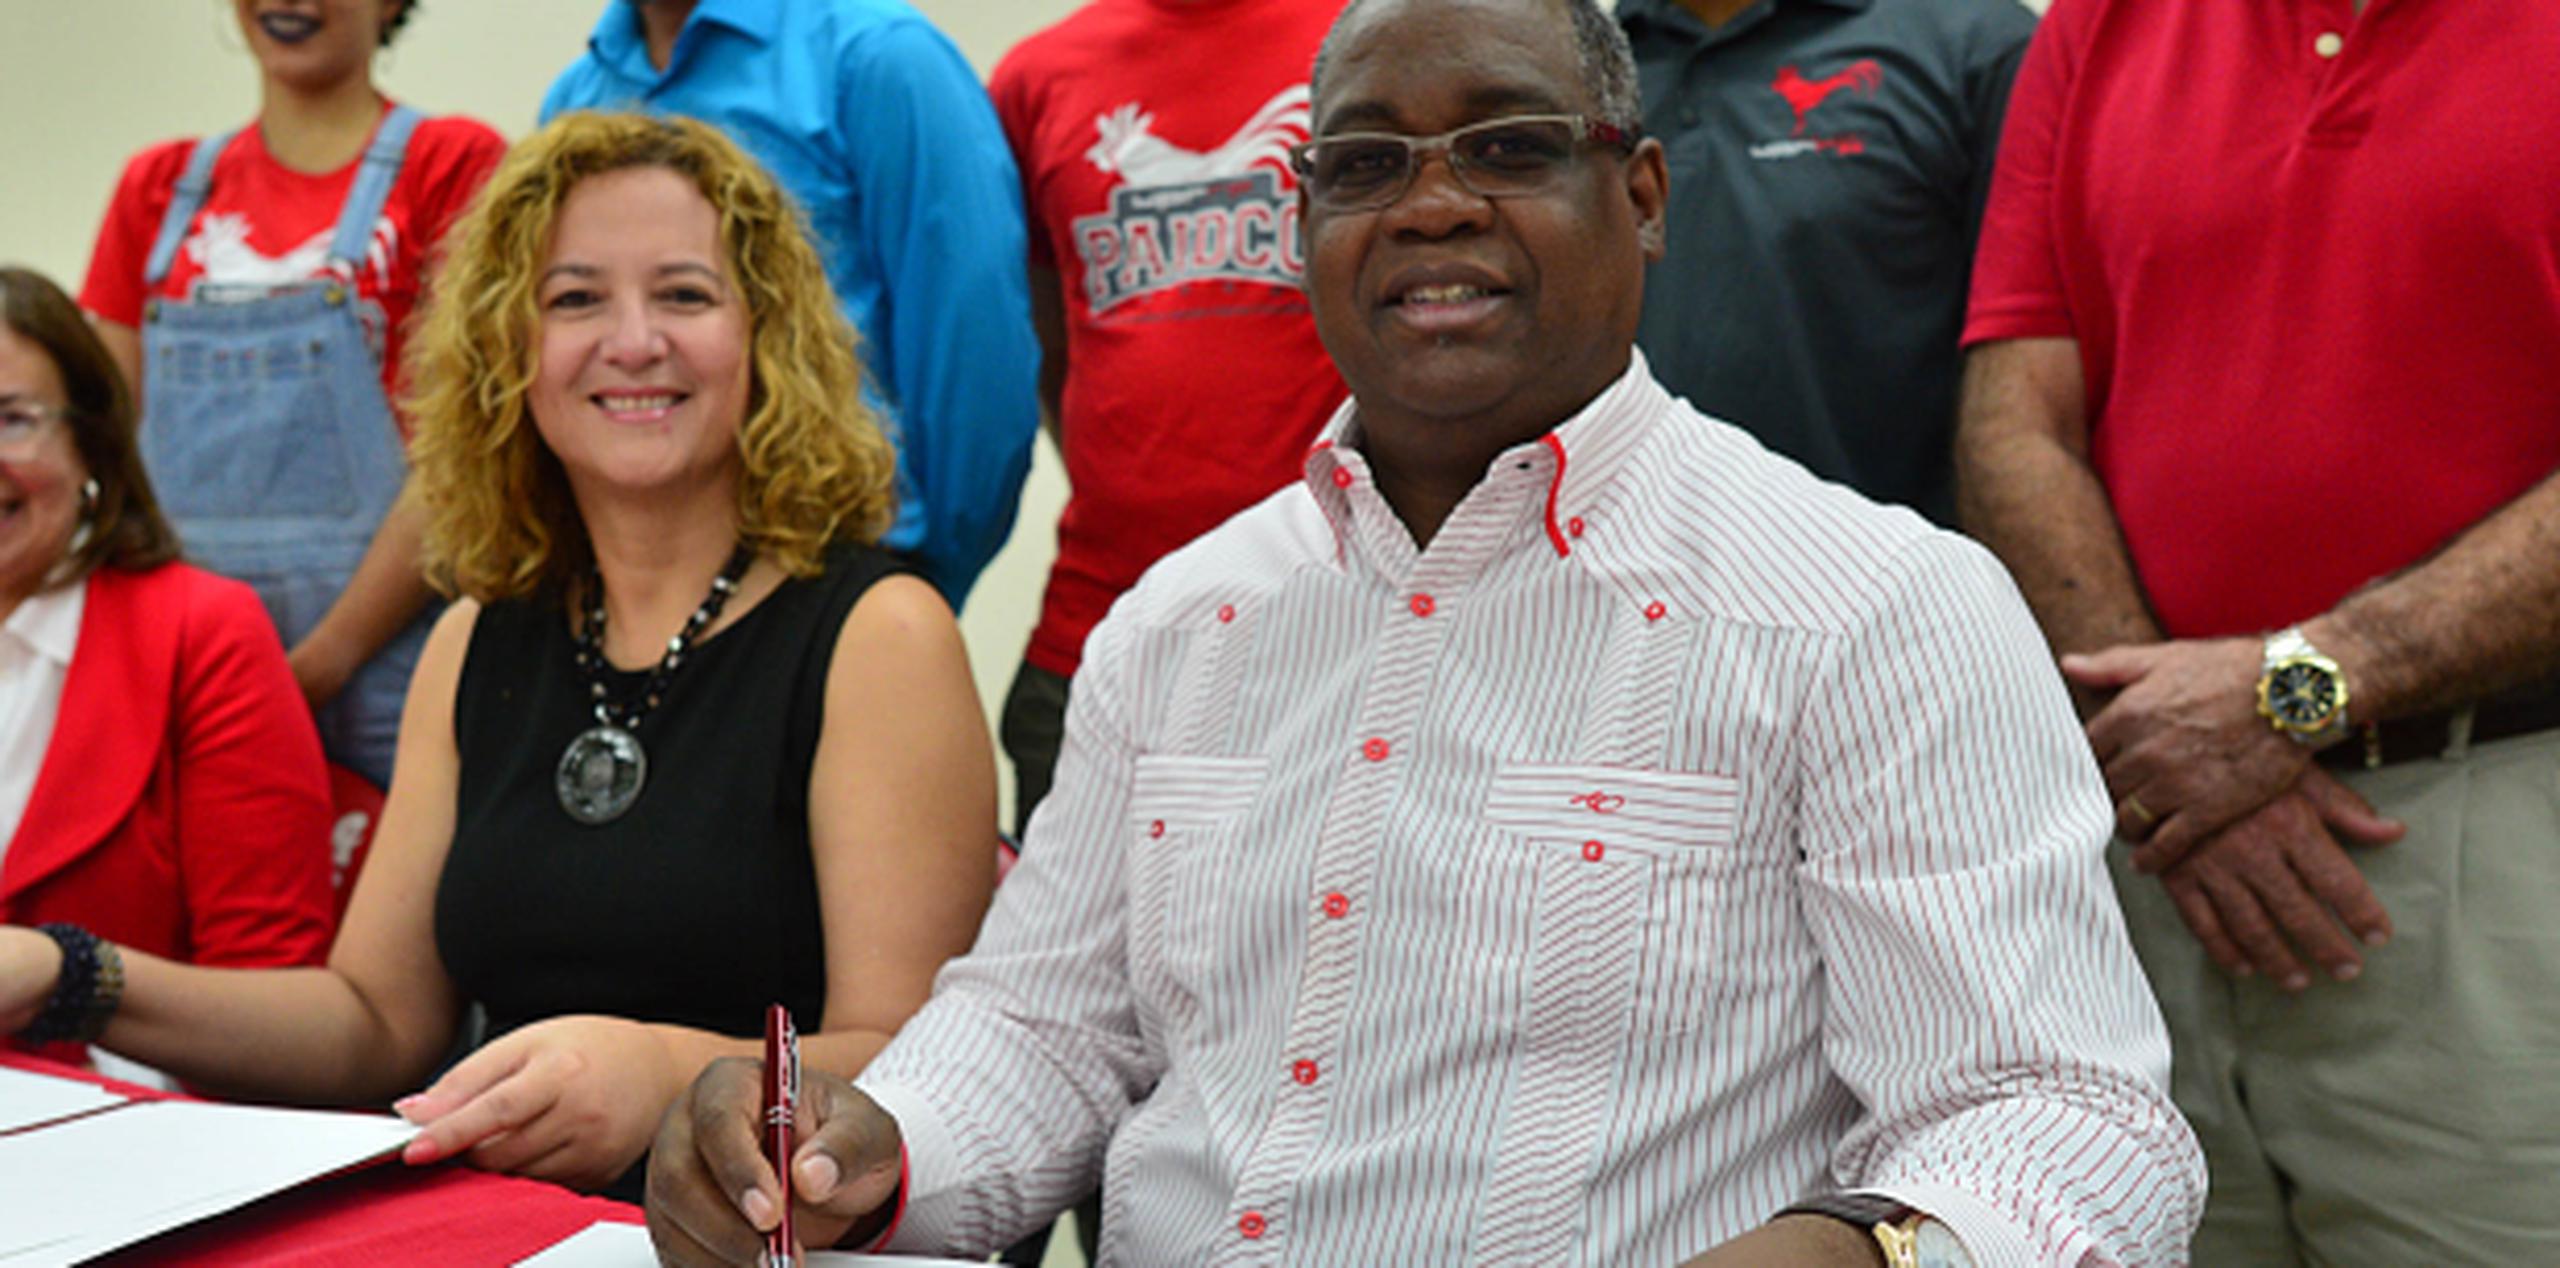 La presidenta del Copur firmó un acuerdo con la Universidad de Puerto Rico, recinto de Río Piedras, para crear un centro de estudios olímpicos. (luis.alcaladelolmo@gfrmedia.com)